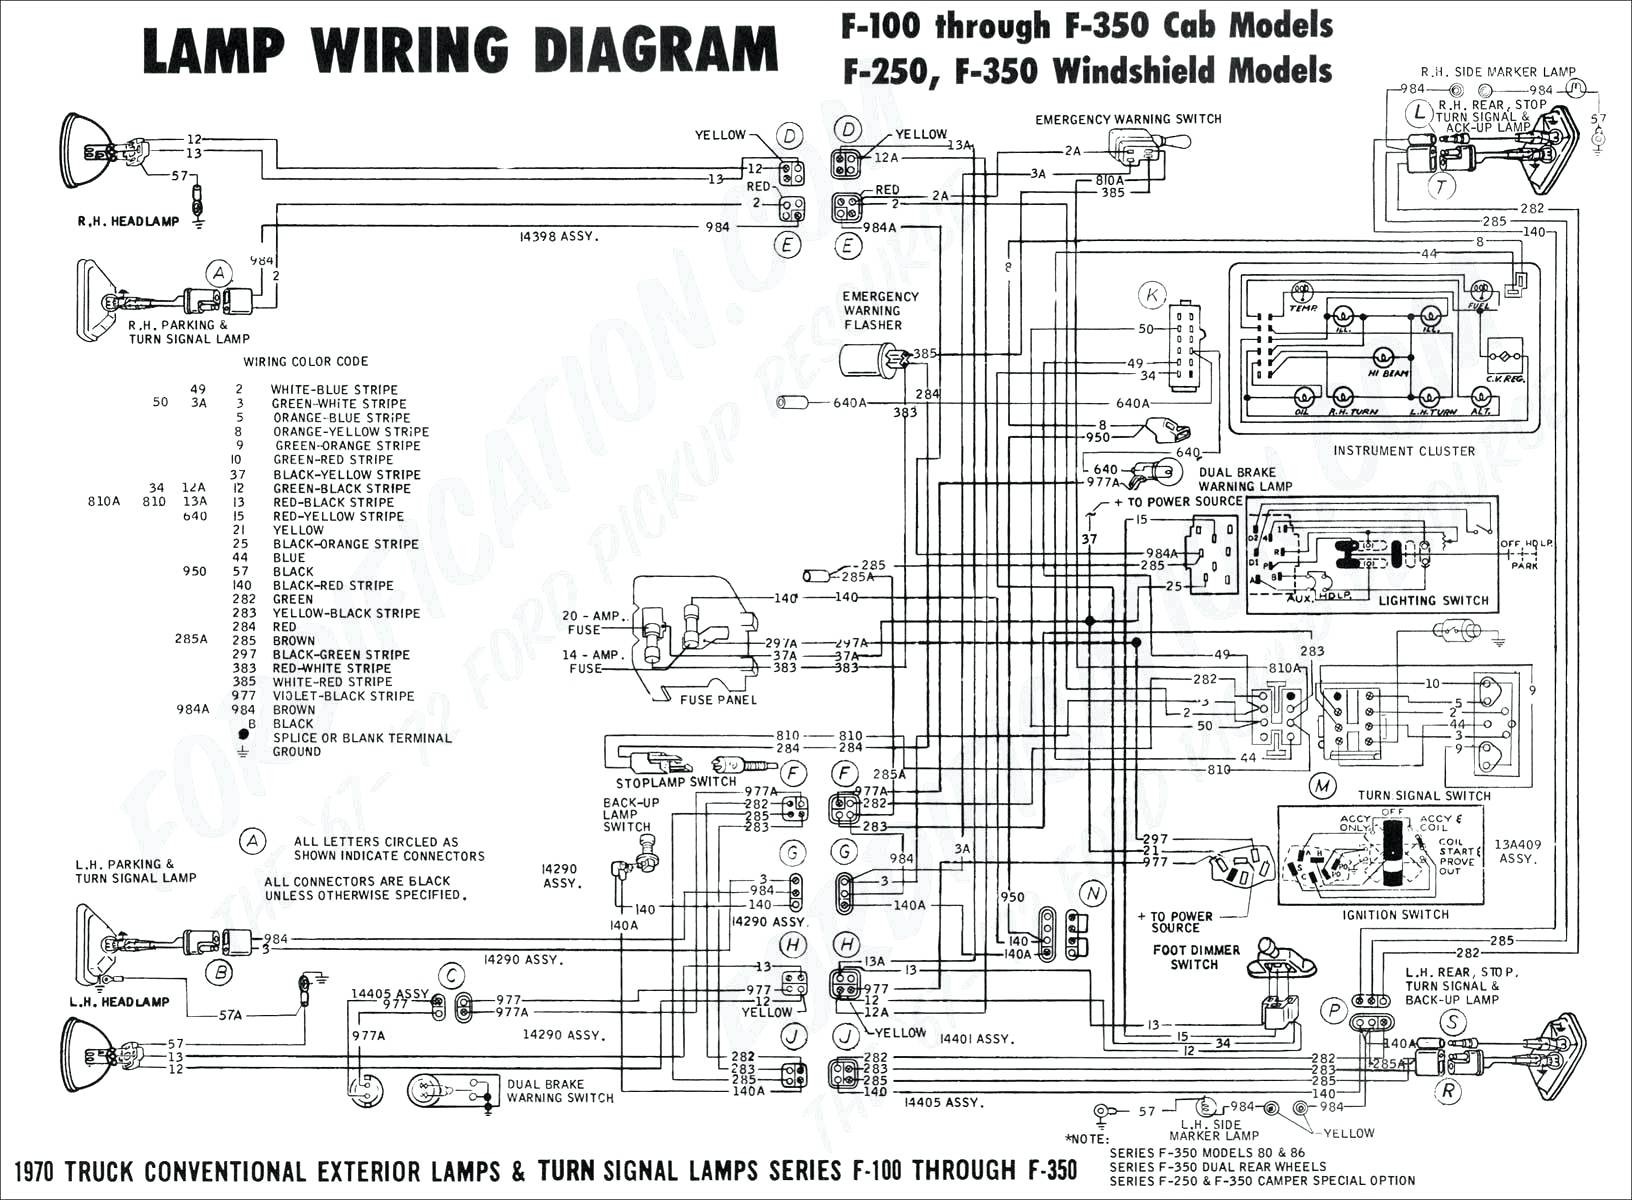 1981 ford fairmont durango ford voltage regulator wiring diagram rh wattatech co